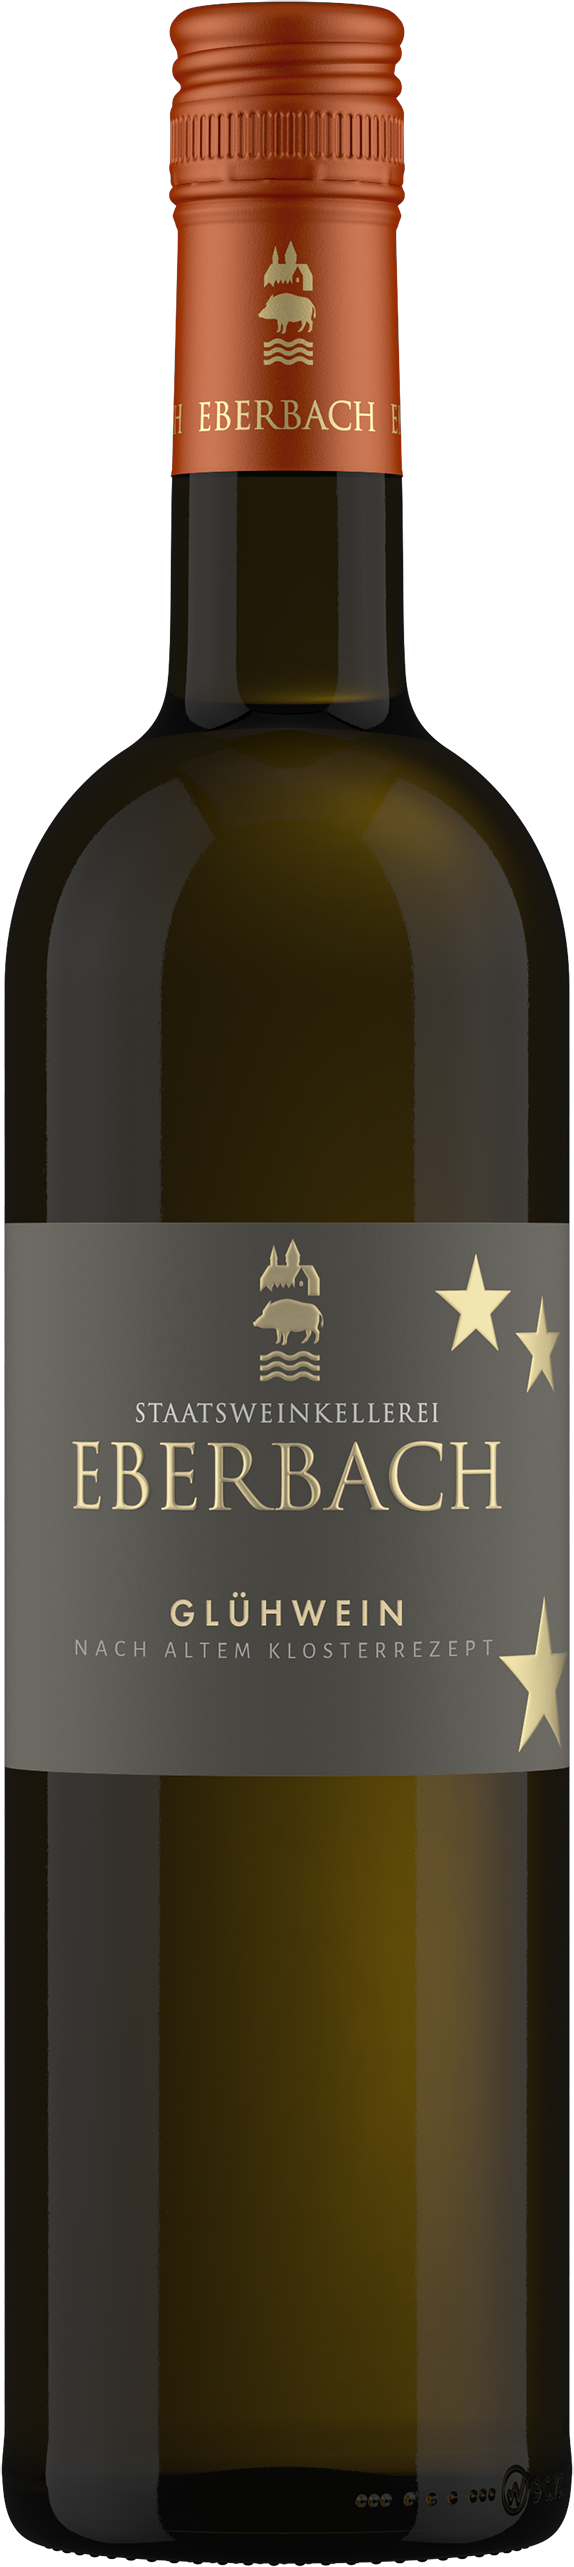 Kloster Eberbach Wein online kaufen & bestellen | Alkoholfreie Weine & Sekte